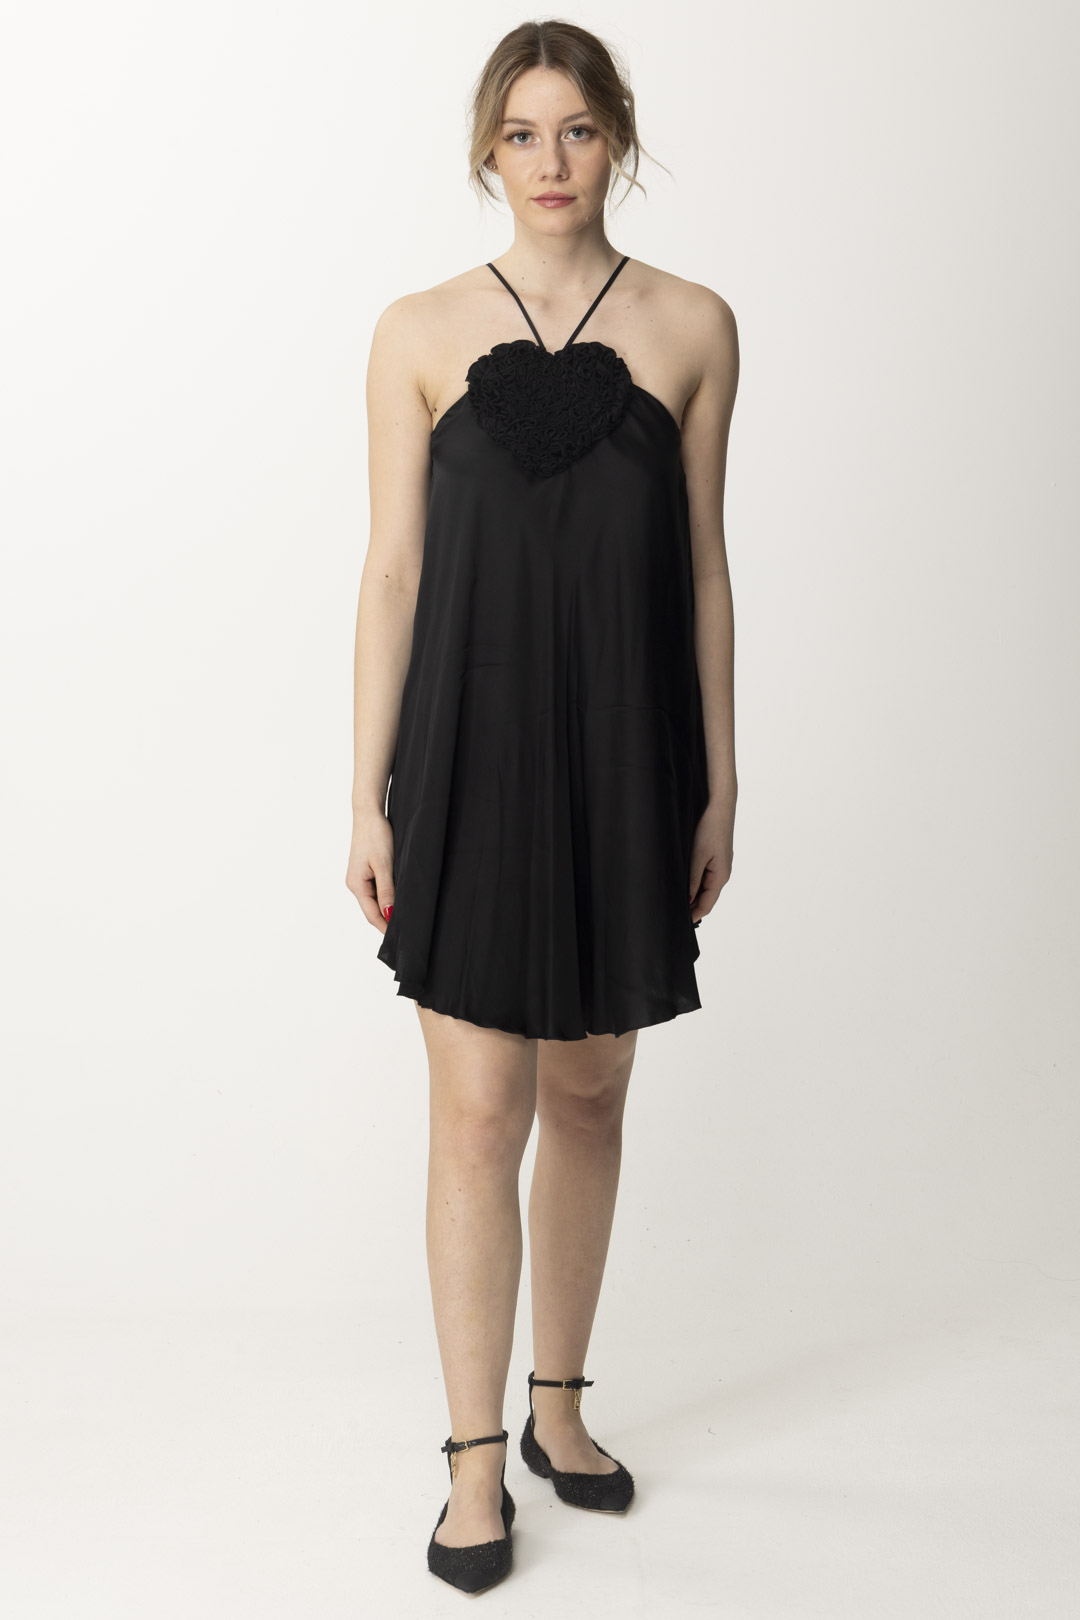 Podgląd: Aniye By Sukienka mini Mary w kształcie serca Black